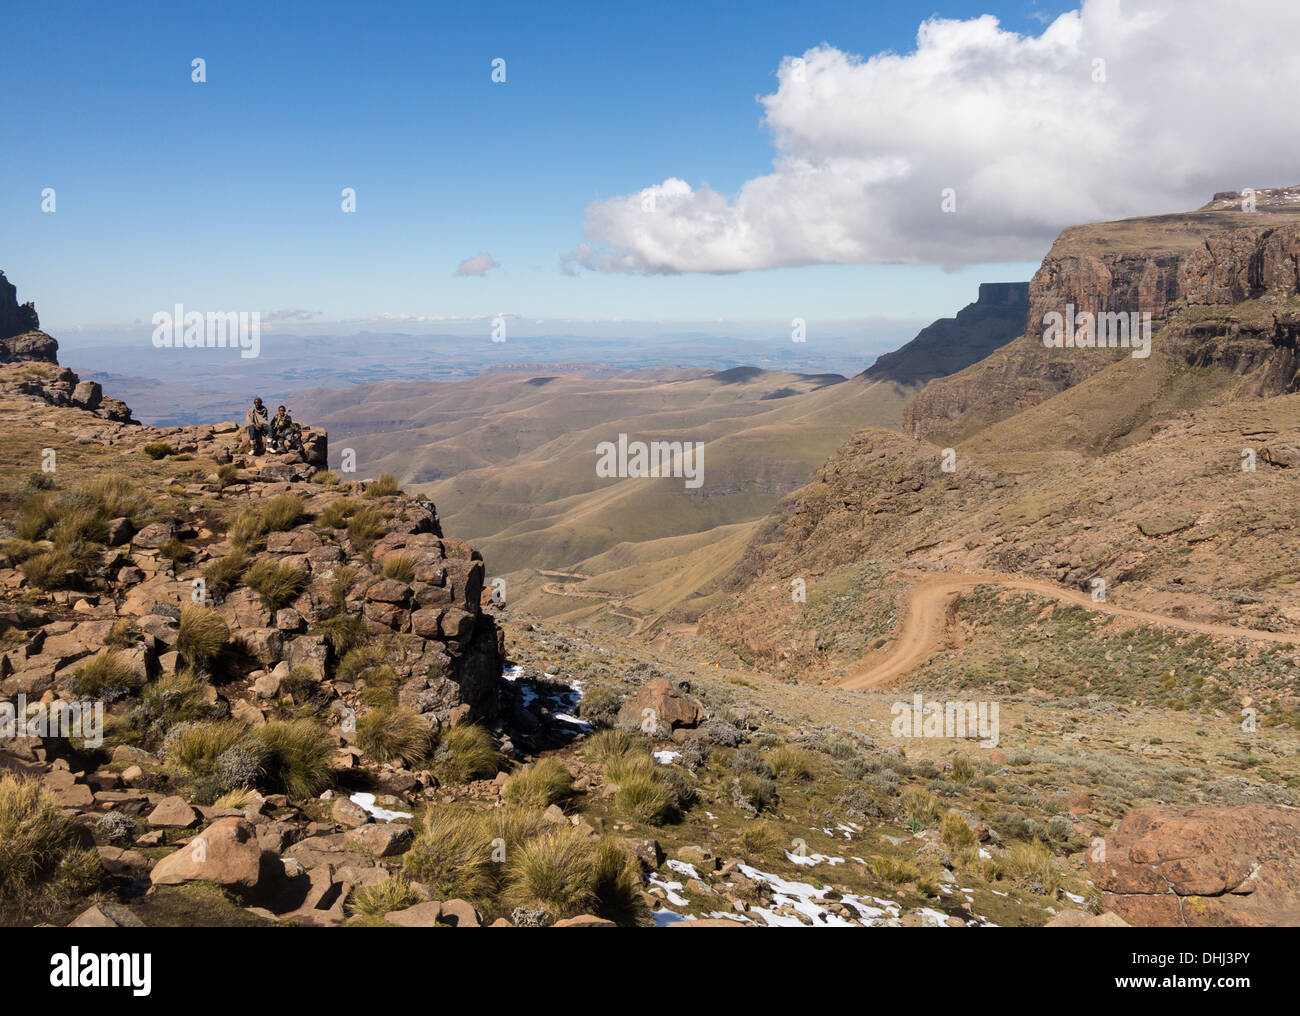 Africa - paesaggio Sani Pass Lesotho, Sud Africa.due ragazzi africani seduti sulla valle e la strada tortuosa Foto Stock